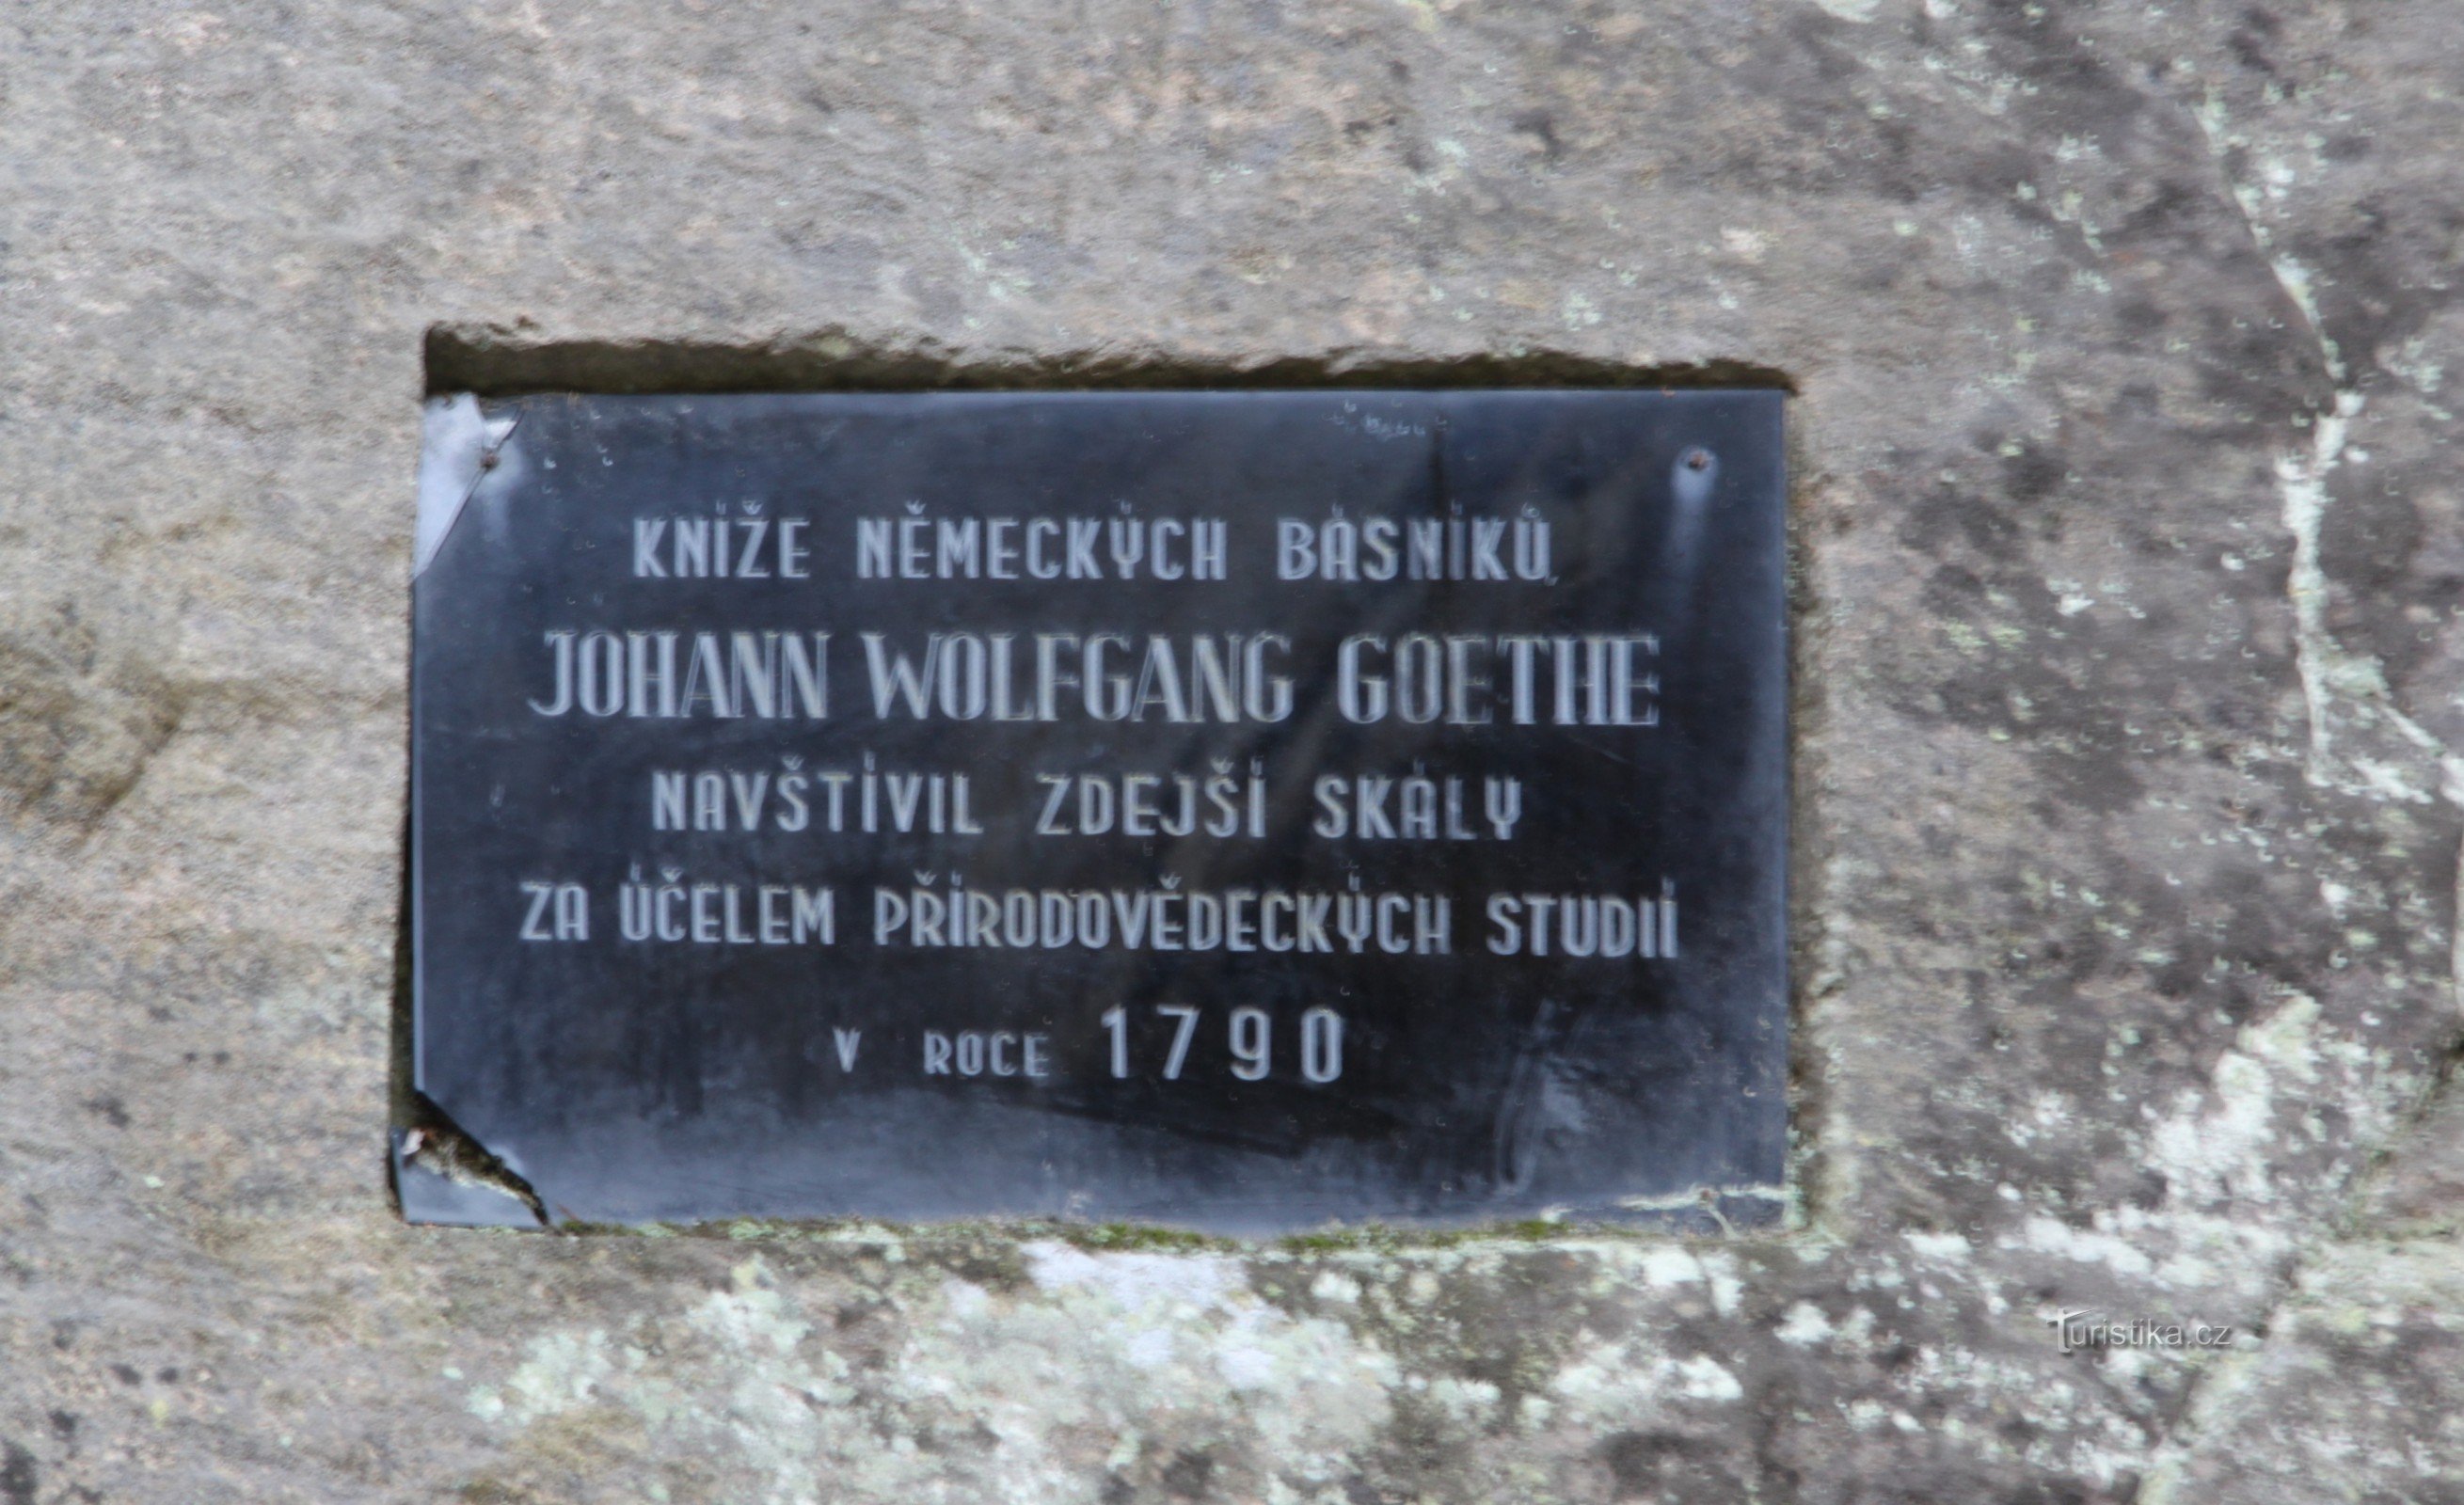 Đài tưởng niệm JWGoethe ở Adršpach - Tấm bảng của Goethe